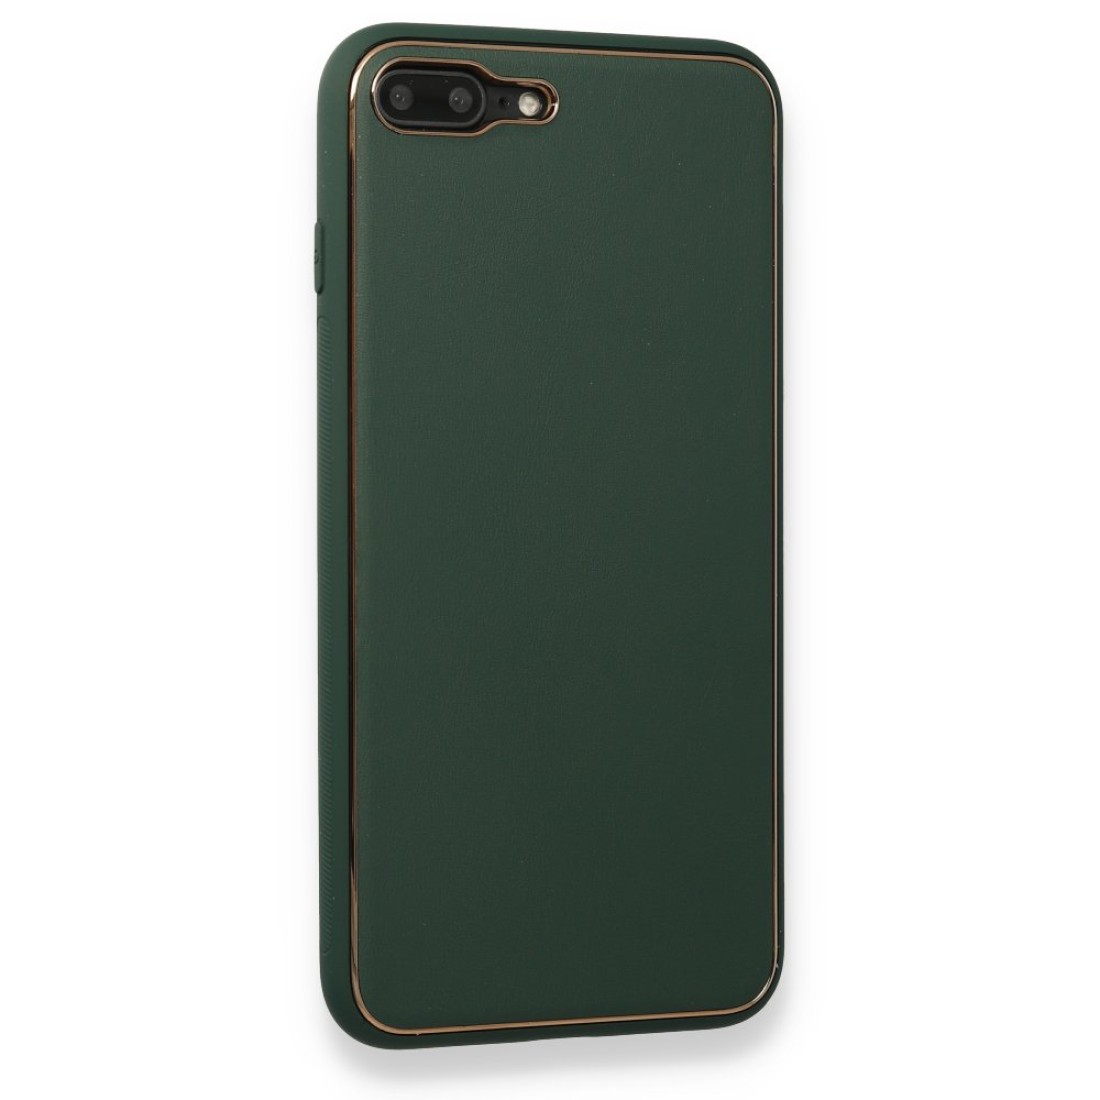 Apple iPhone 8 Plus Kılıf Coco Deri Silikon Kapak - Yeşil